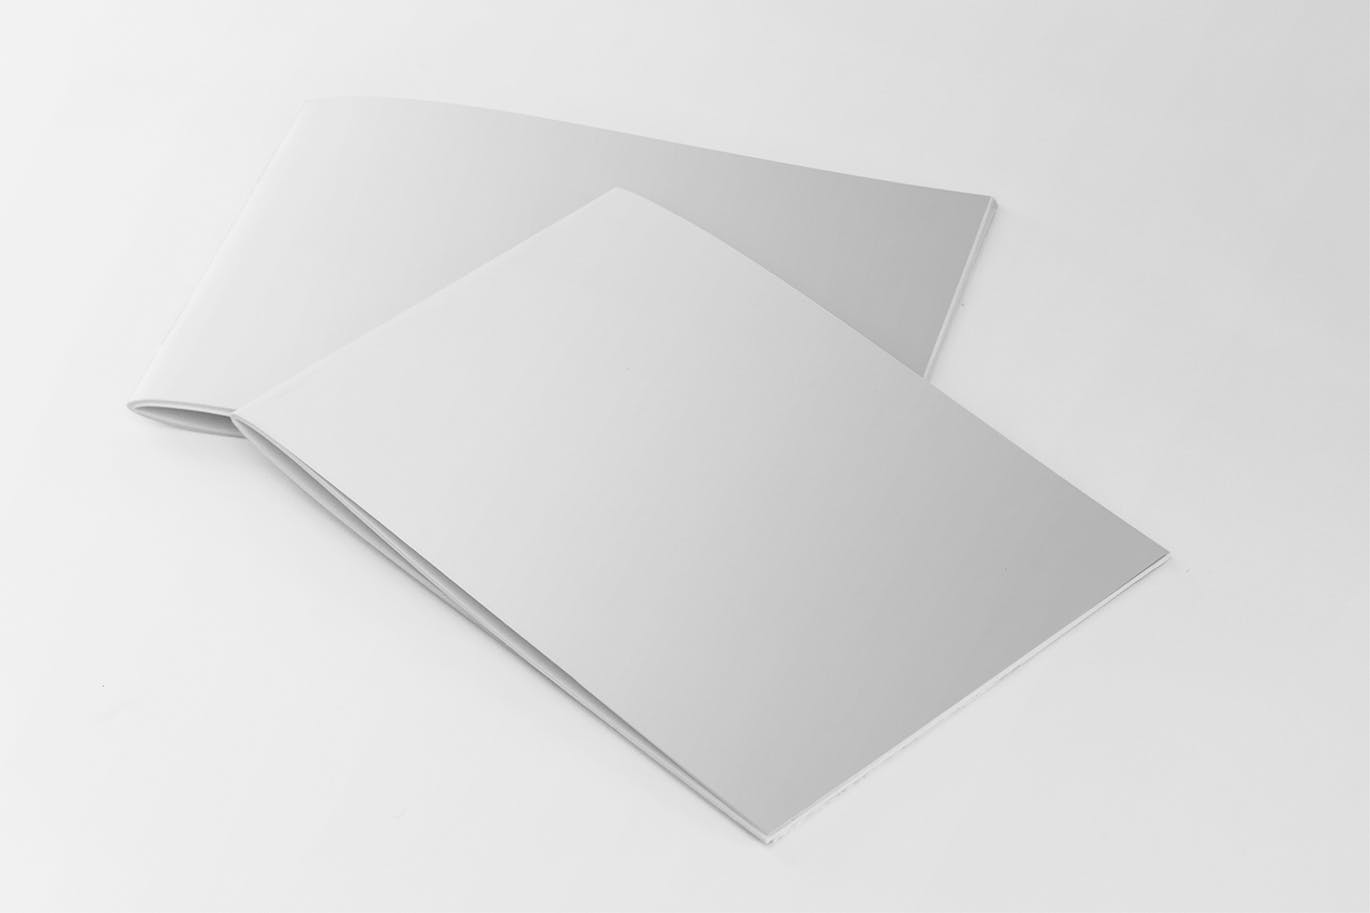 美国信纸尺寸宣传册叠放效果图样机第一素材精选 US Half Letter 2 Covers Brochure Mockup插图(1)